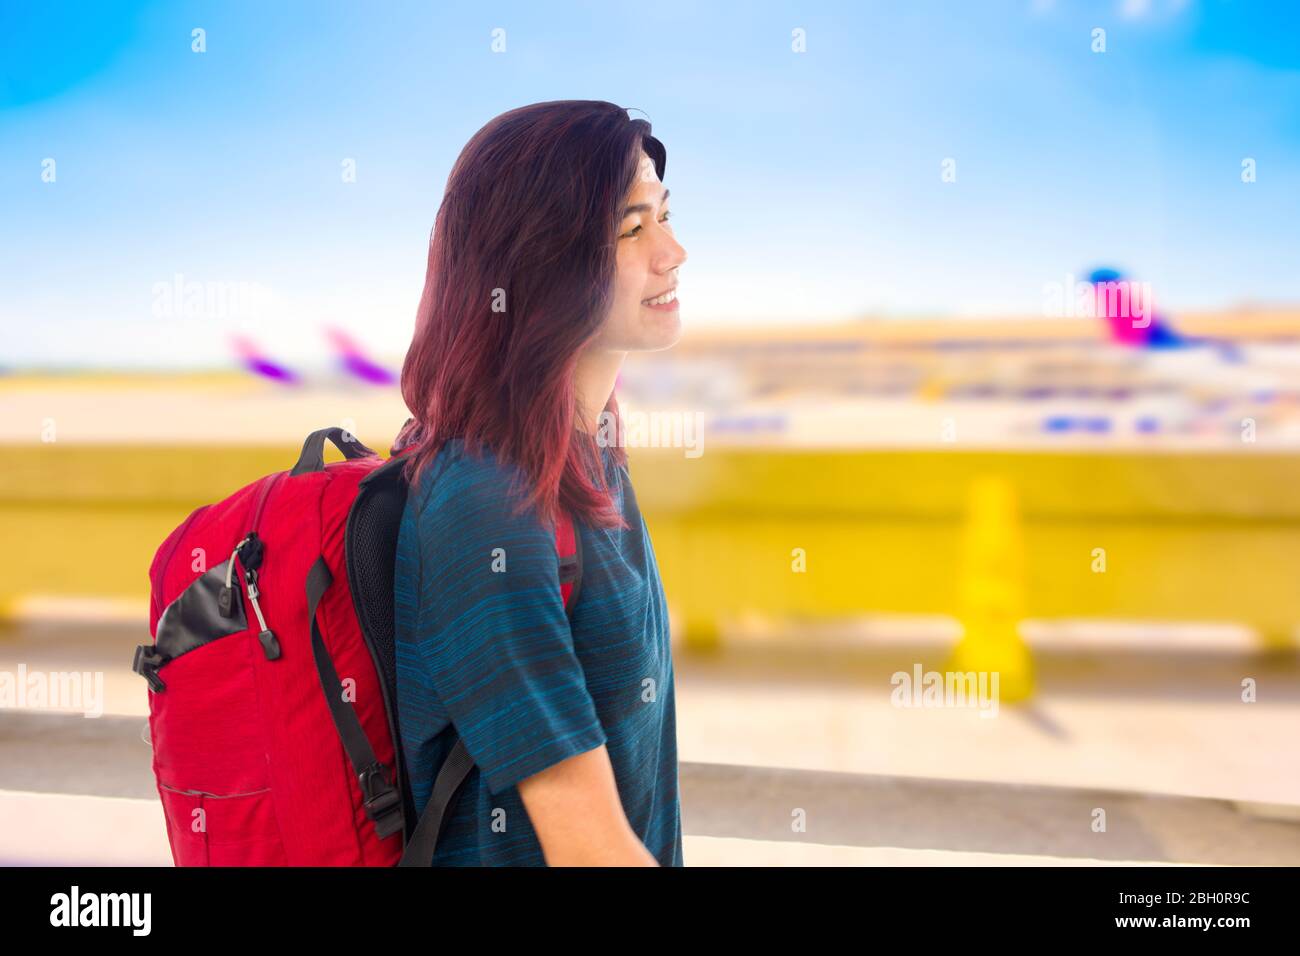 Une fille asiatique souriante avec sac à dos rouge qui passe devant des rangées d'avions garés à l'aéroport le jour ensoleillé Banque D'Images